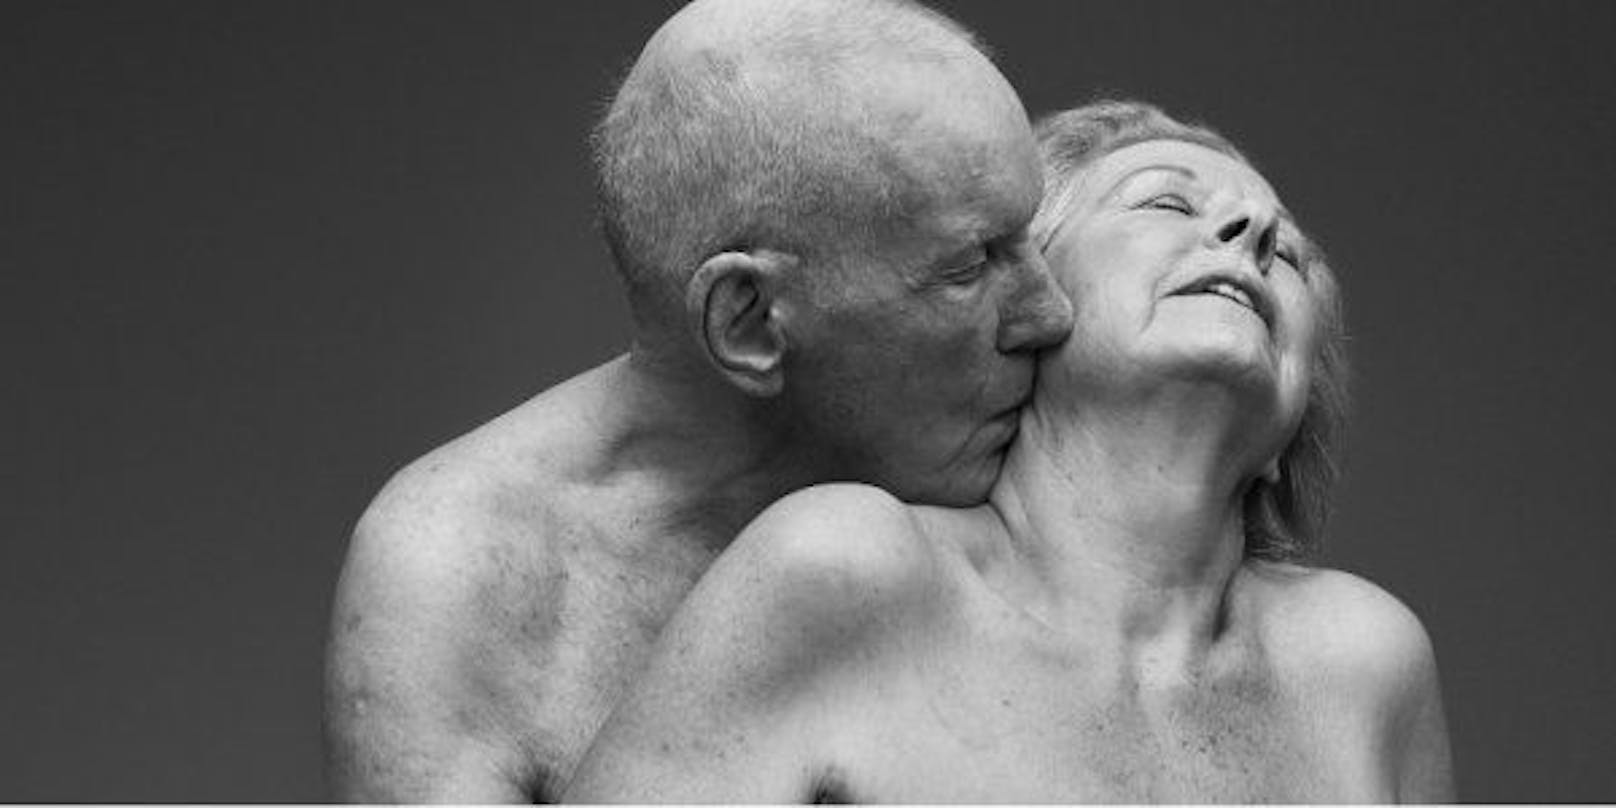 Daphne und Arthur: "Kinder denken, dass ältere Menschen keinen Sex haben. Aber das hängt nicht unbedingt mit dem Alter zusammen."